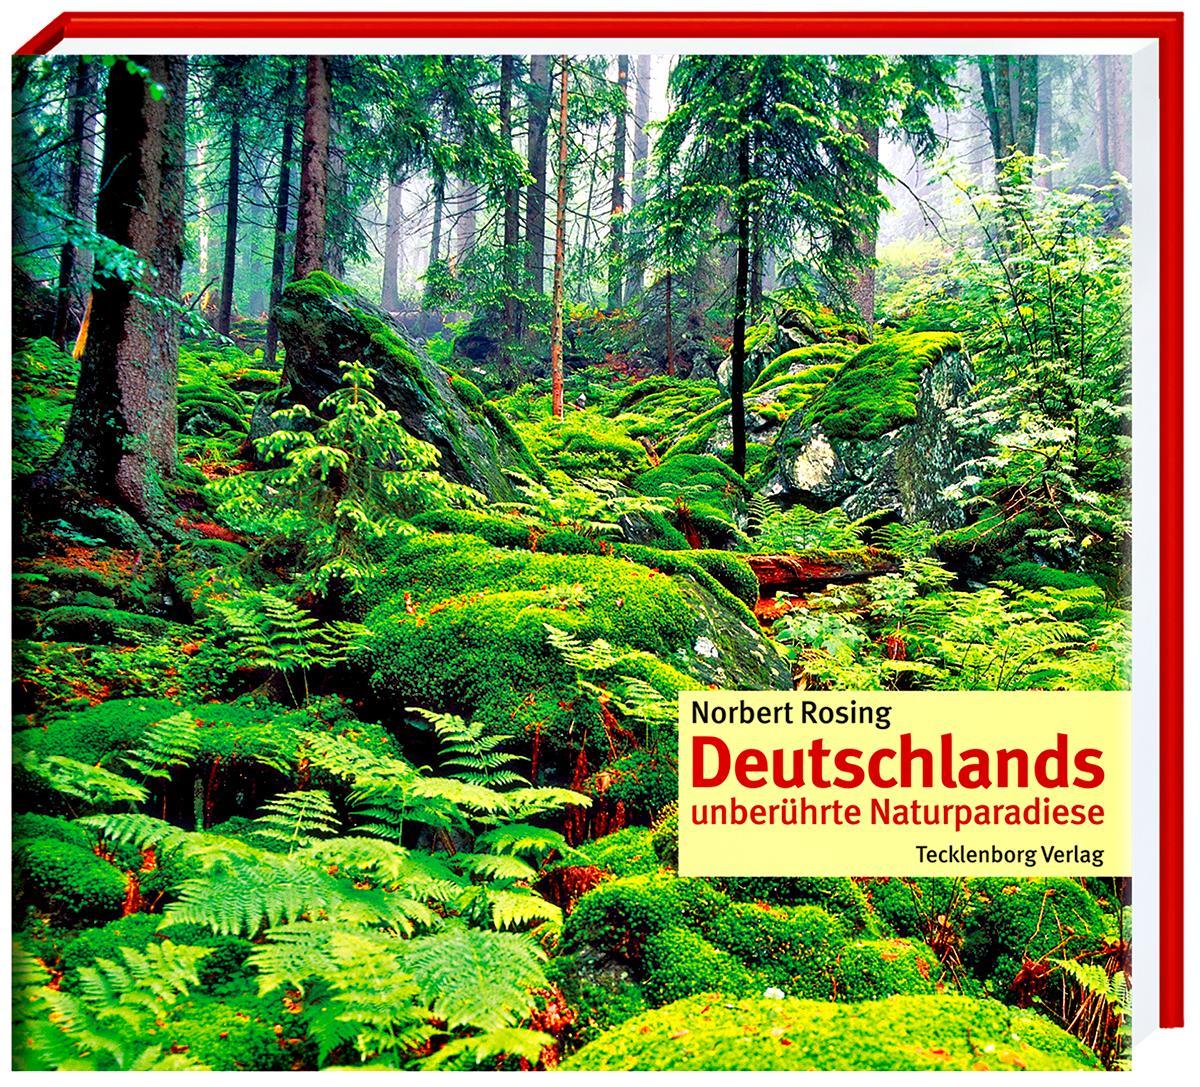 Deutschlands unberührte Naturparadiese, Norbert Rosing - Photo 1/1